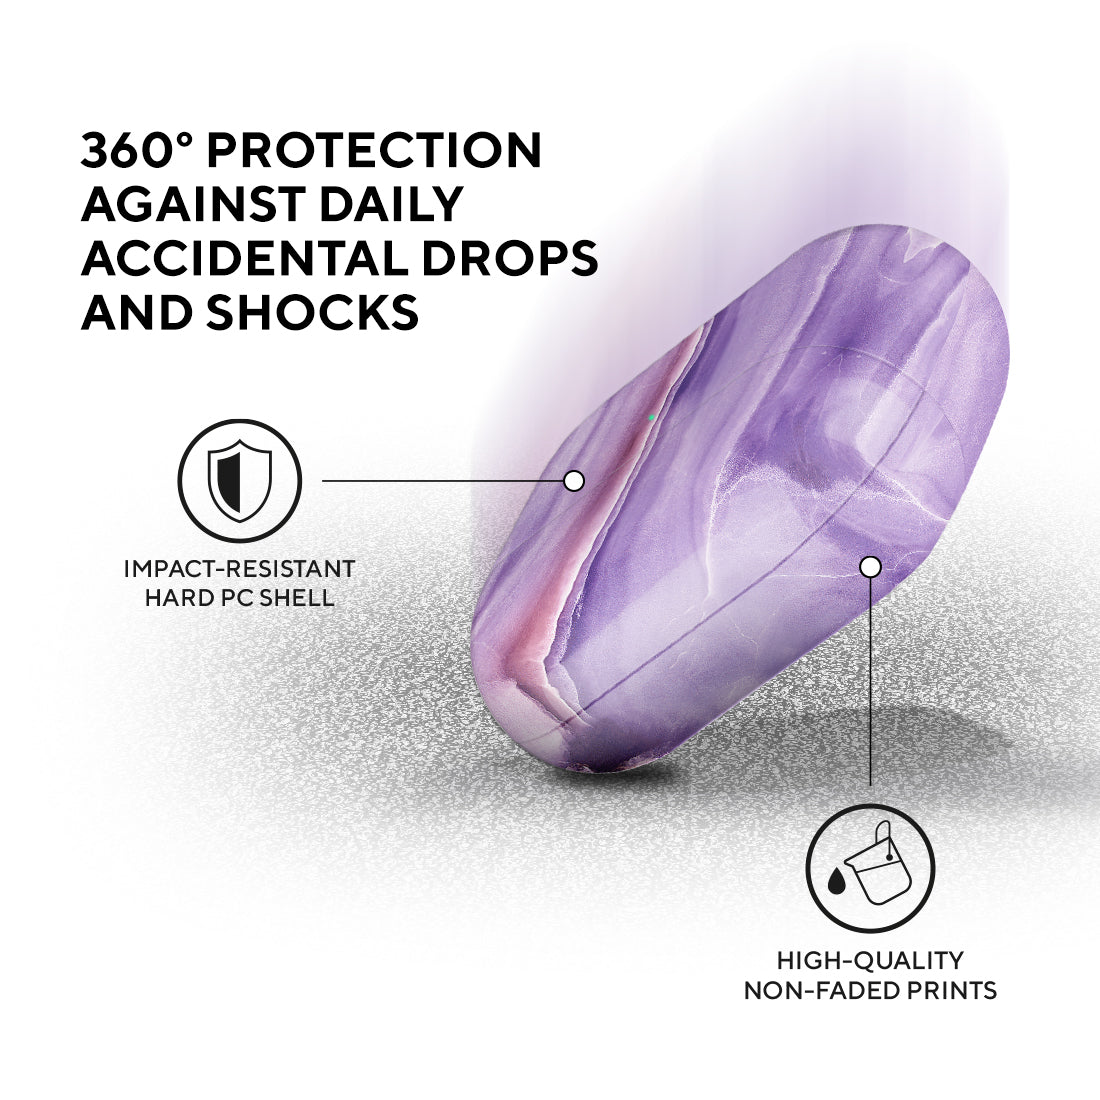 法國浪漫紫羅蘭色 | AirPods 3 保護殼